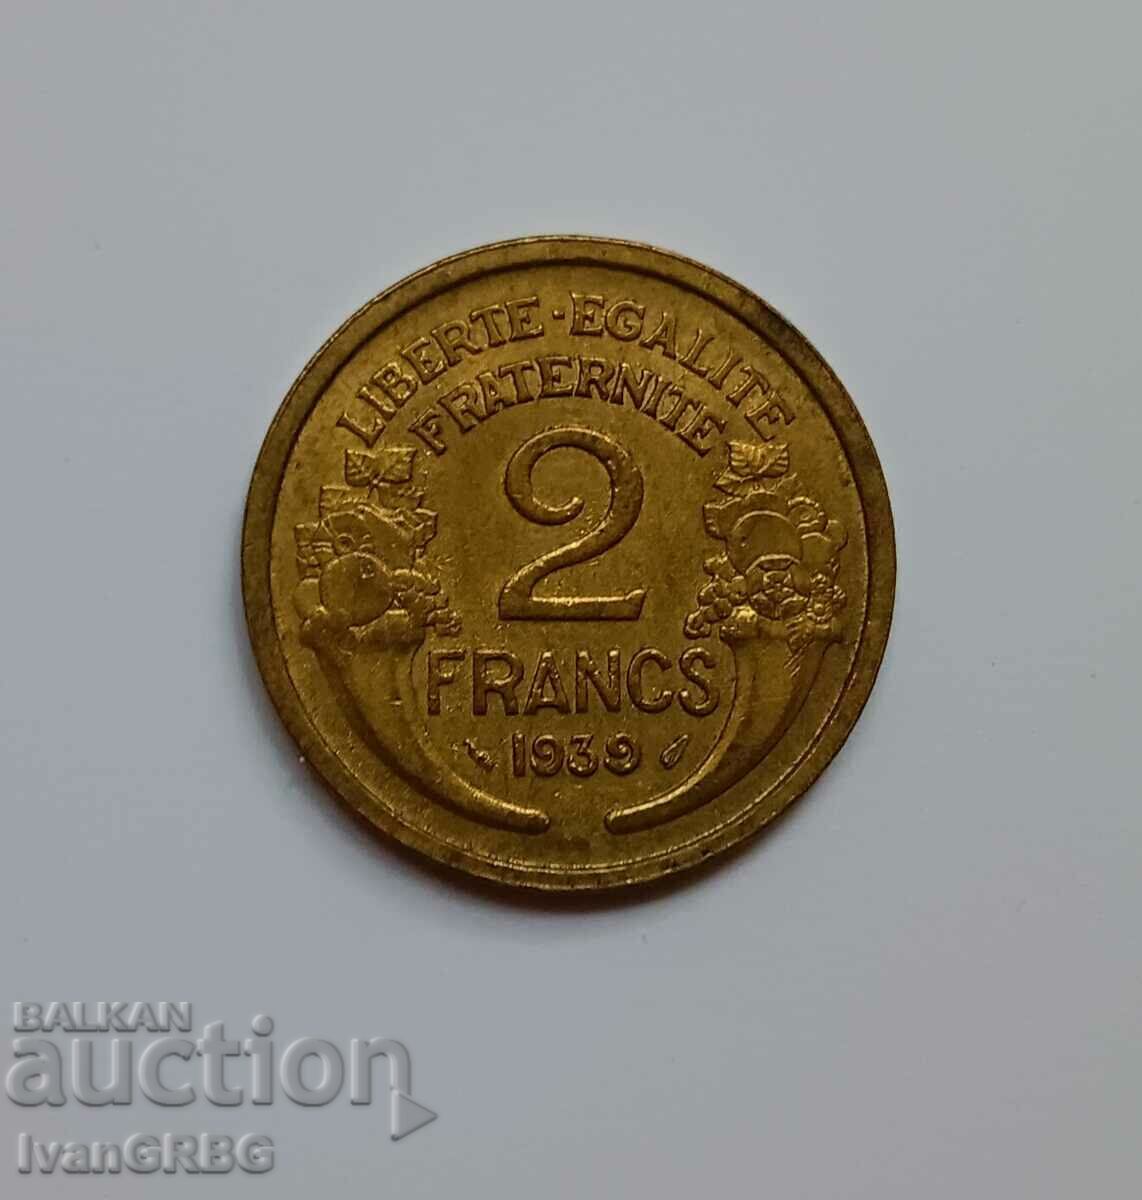 2 francs France 1939 2 francs 1939 French coin